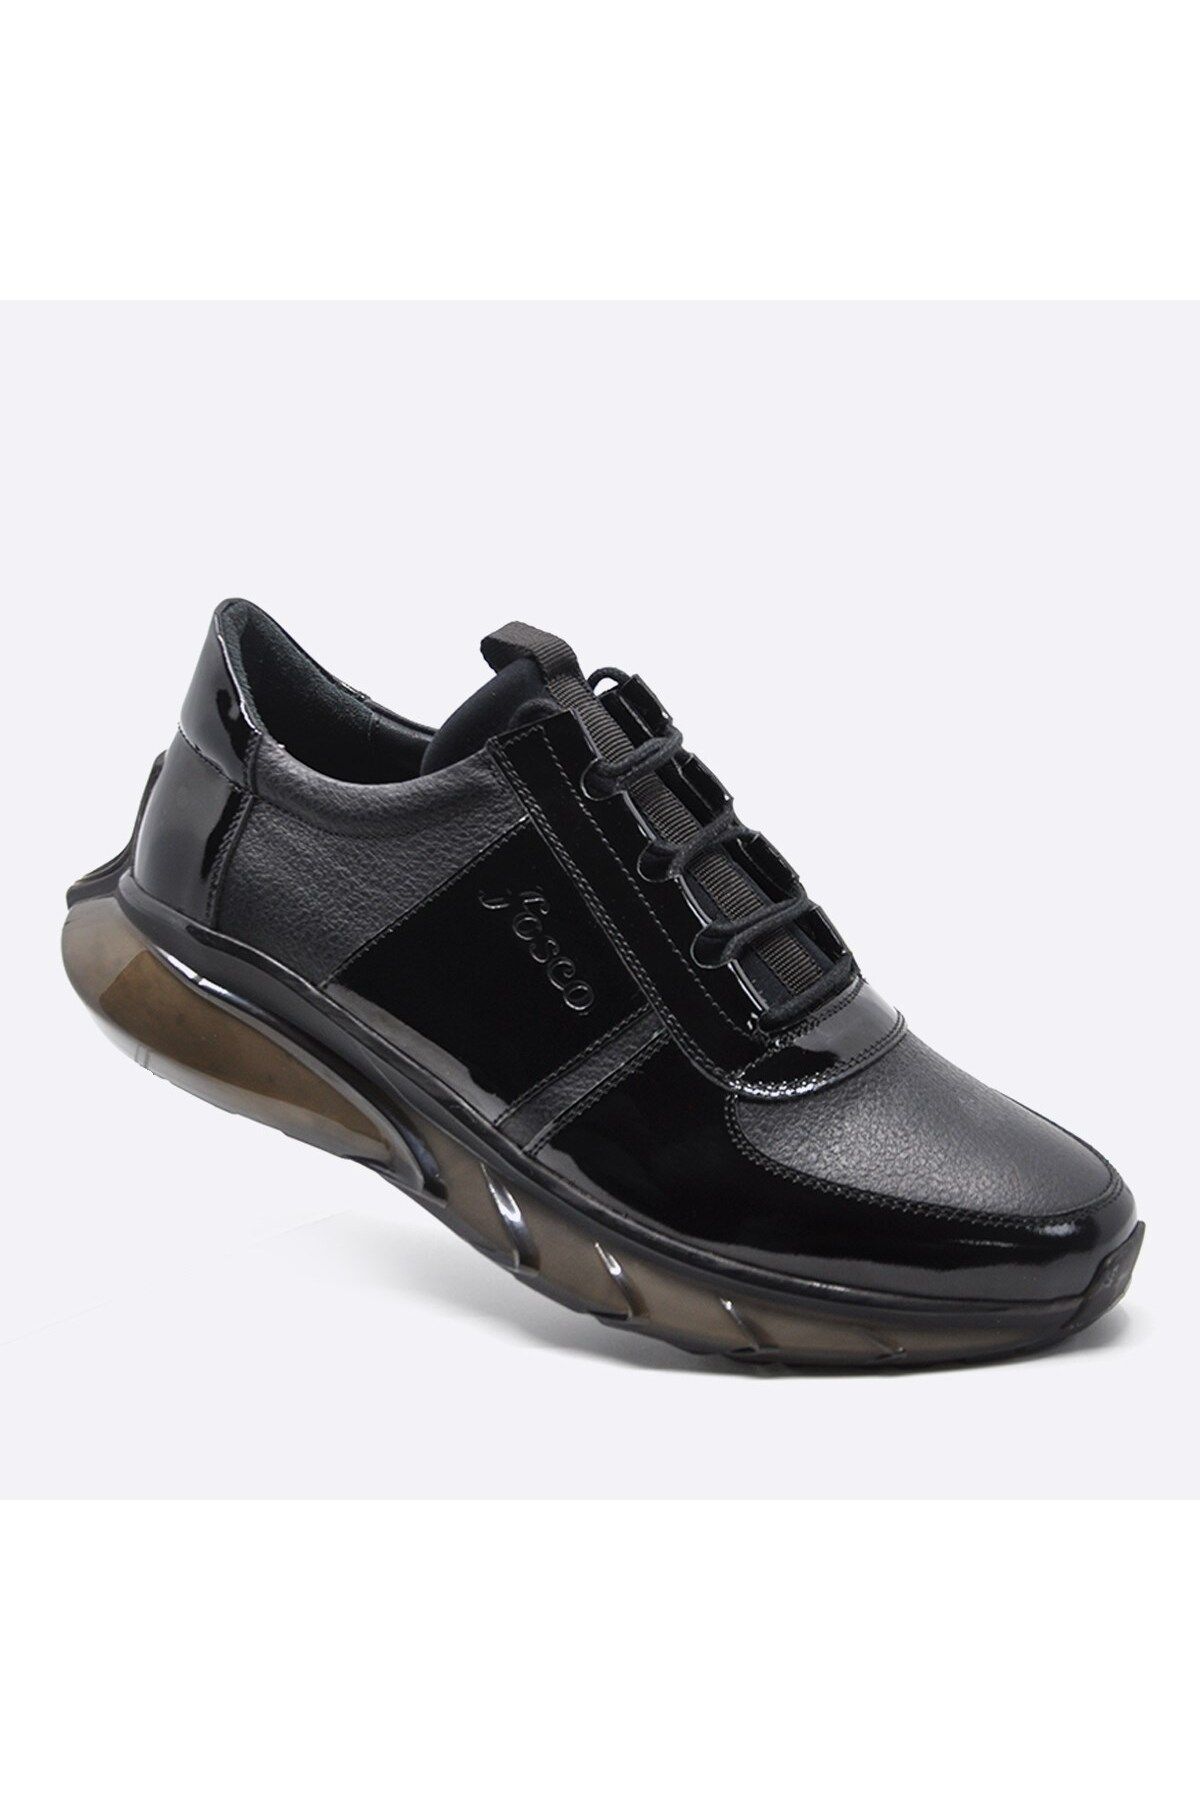 Fosco Hakiki Deri Sneaker Erkek Ayakkabı Siyah 9873 100